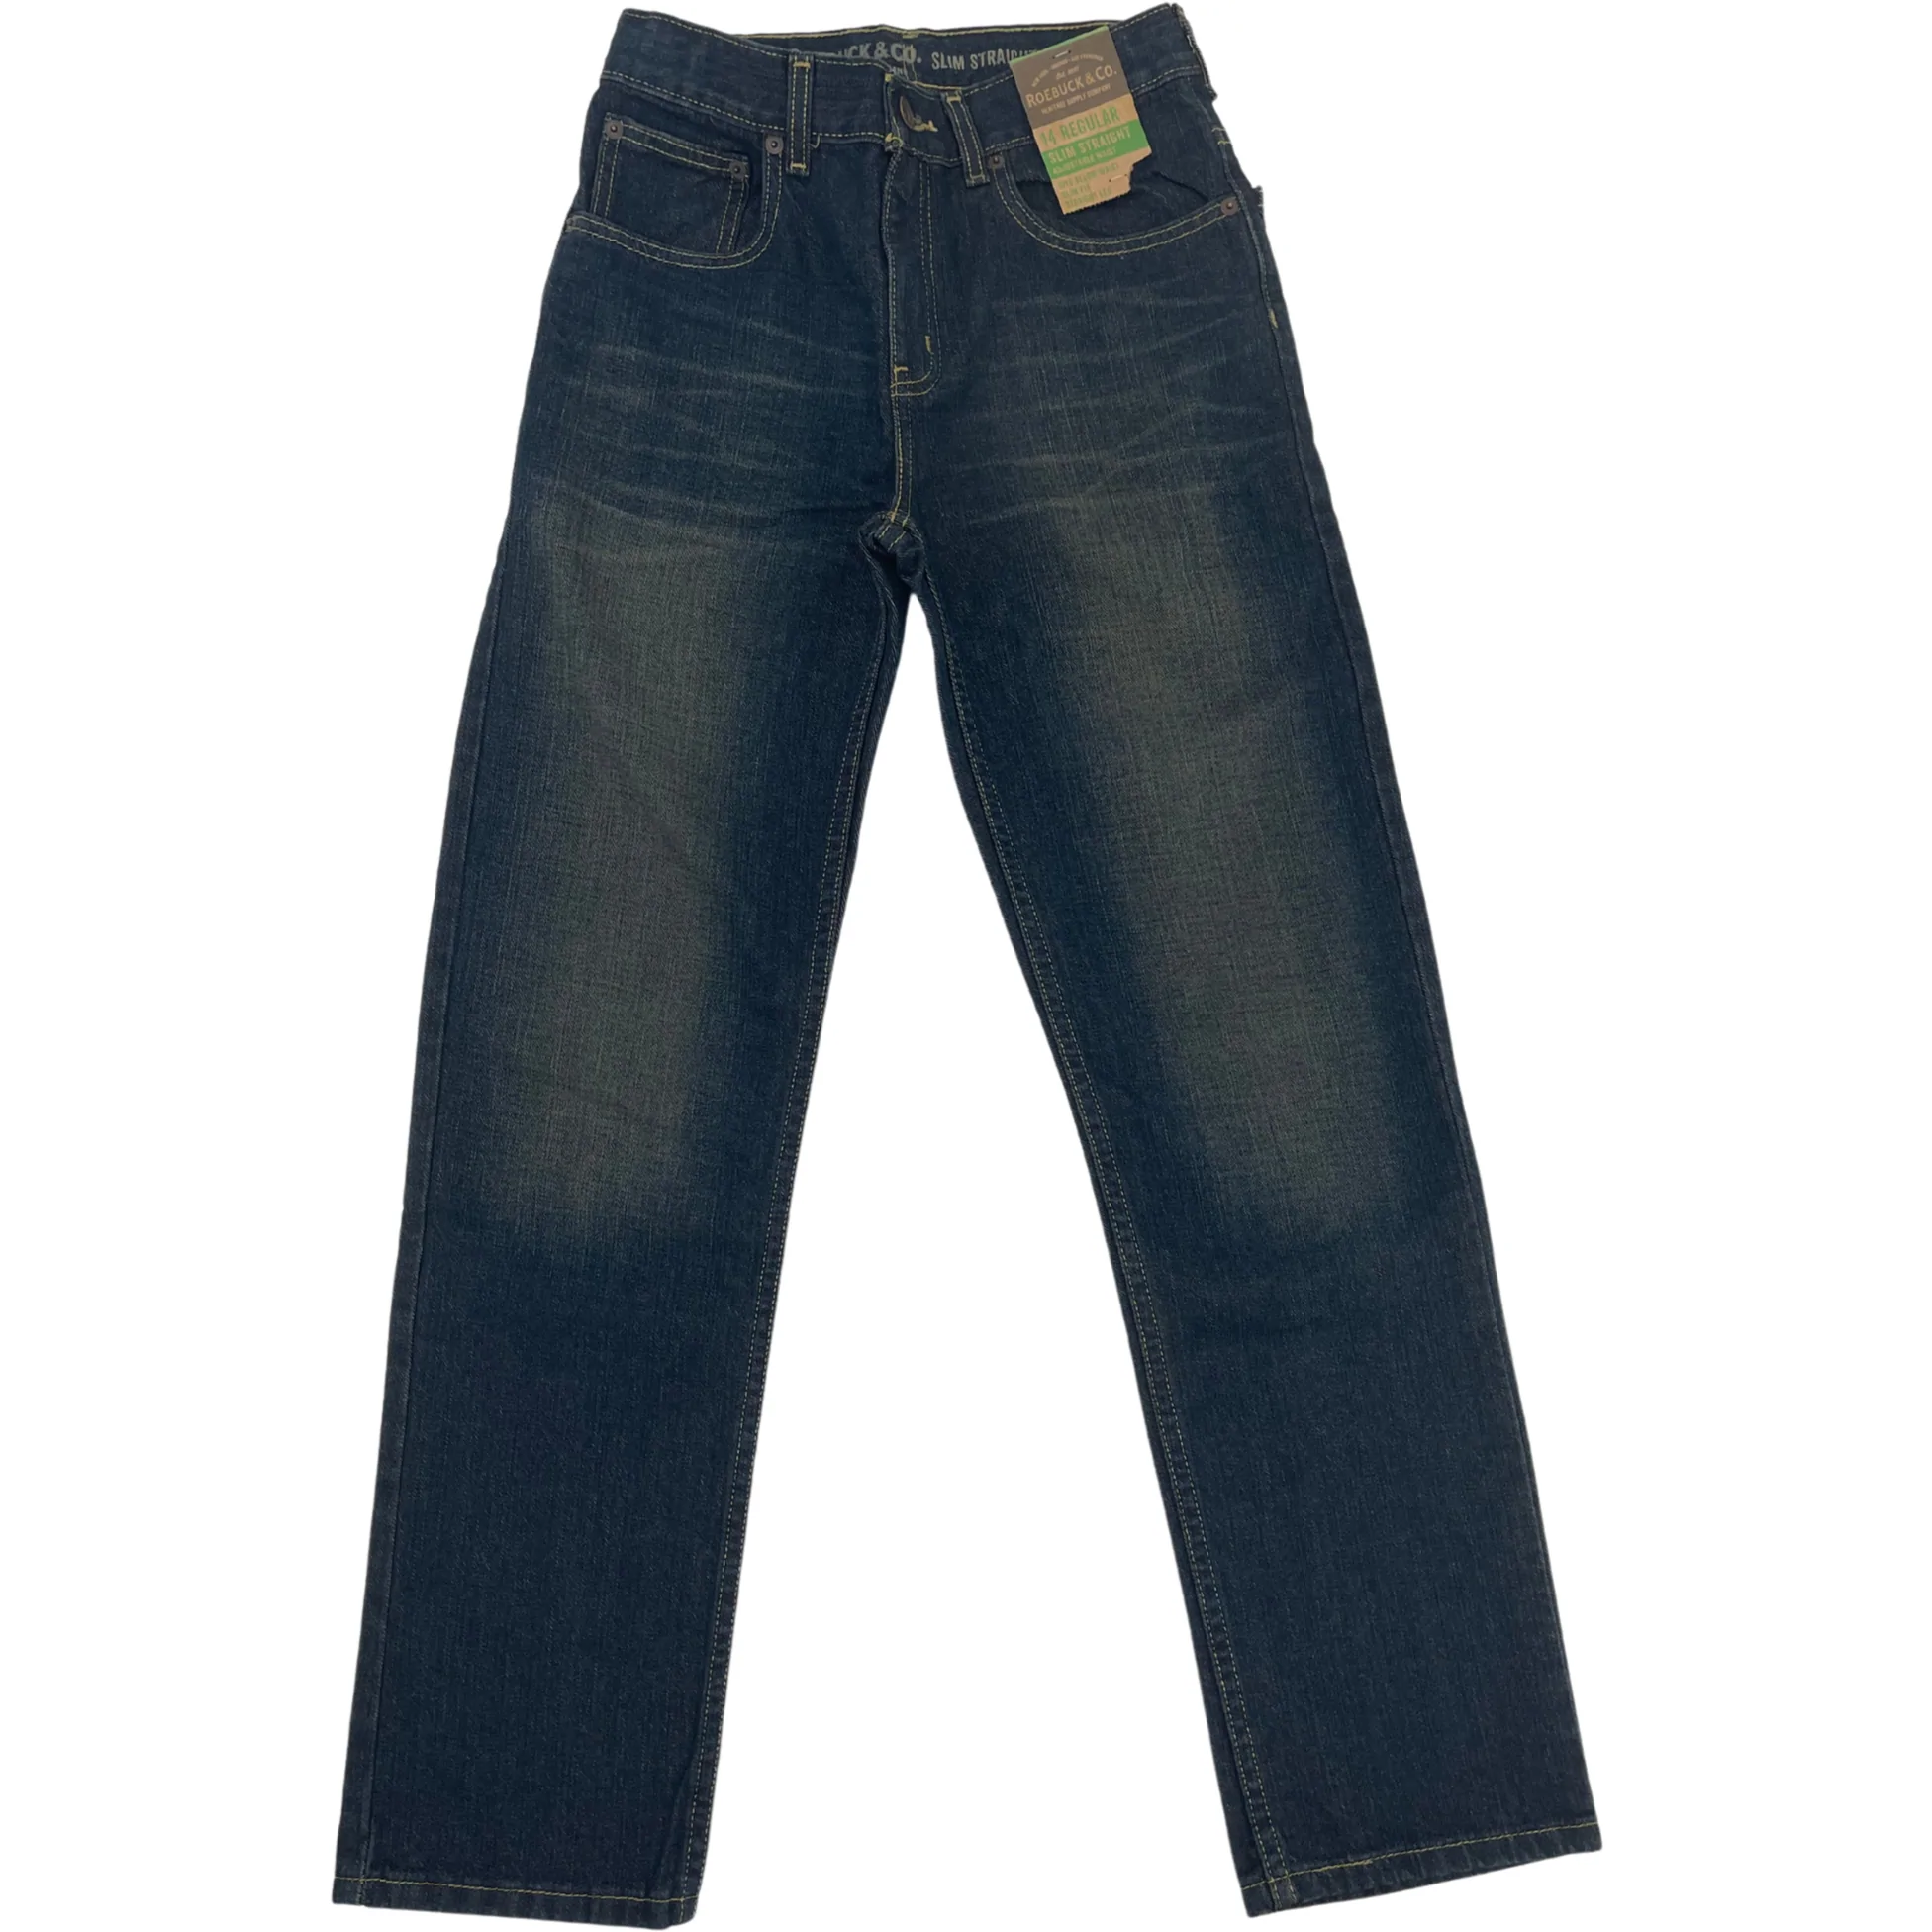 Roebuck & Co. Boy's Jeans / Slim Straight / Dark Wash / Adjustable Waist / Size 14